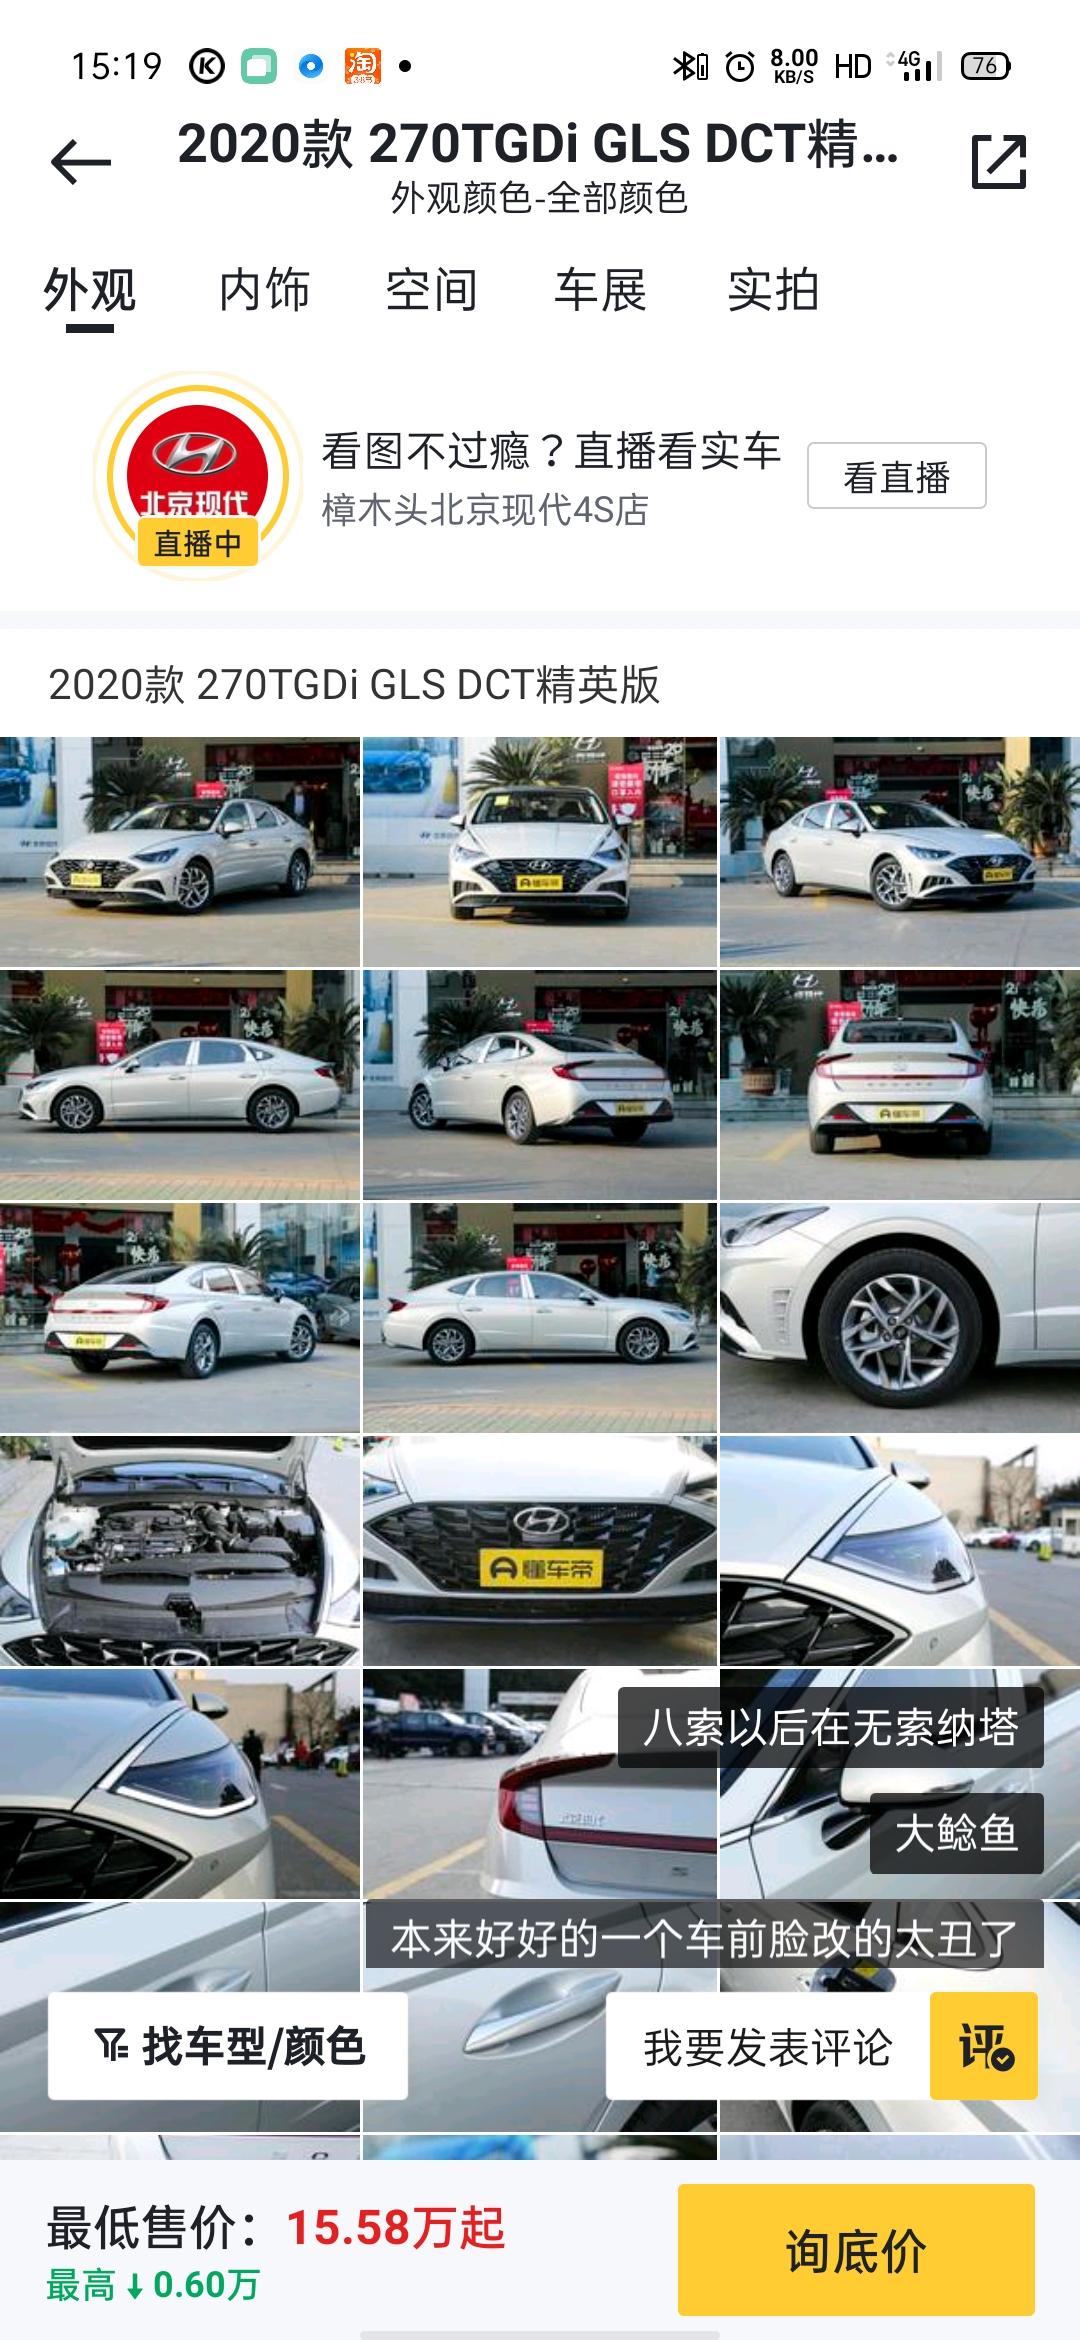 现代索纳塔 本人想在广东或者广西购买  1.5T精英版  裸车价多少呢 加天窗要加多少钱呢？ 首付三成 分期36期大概多